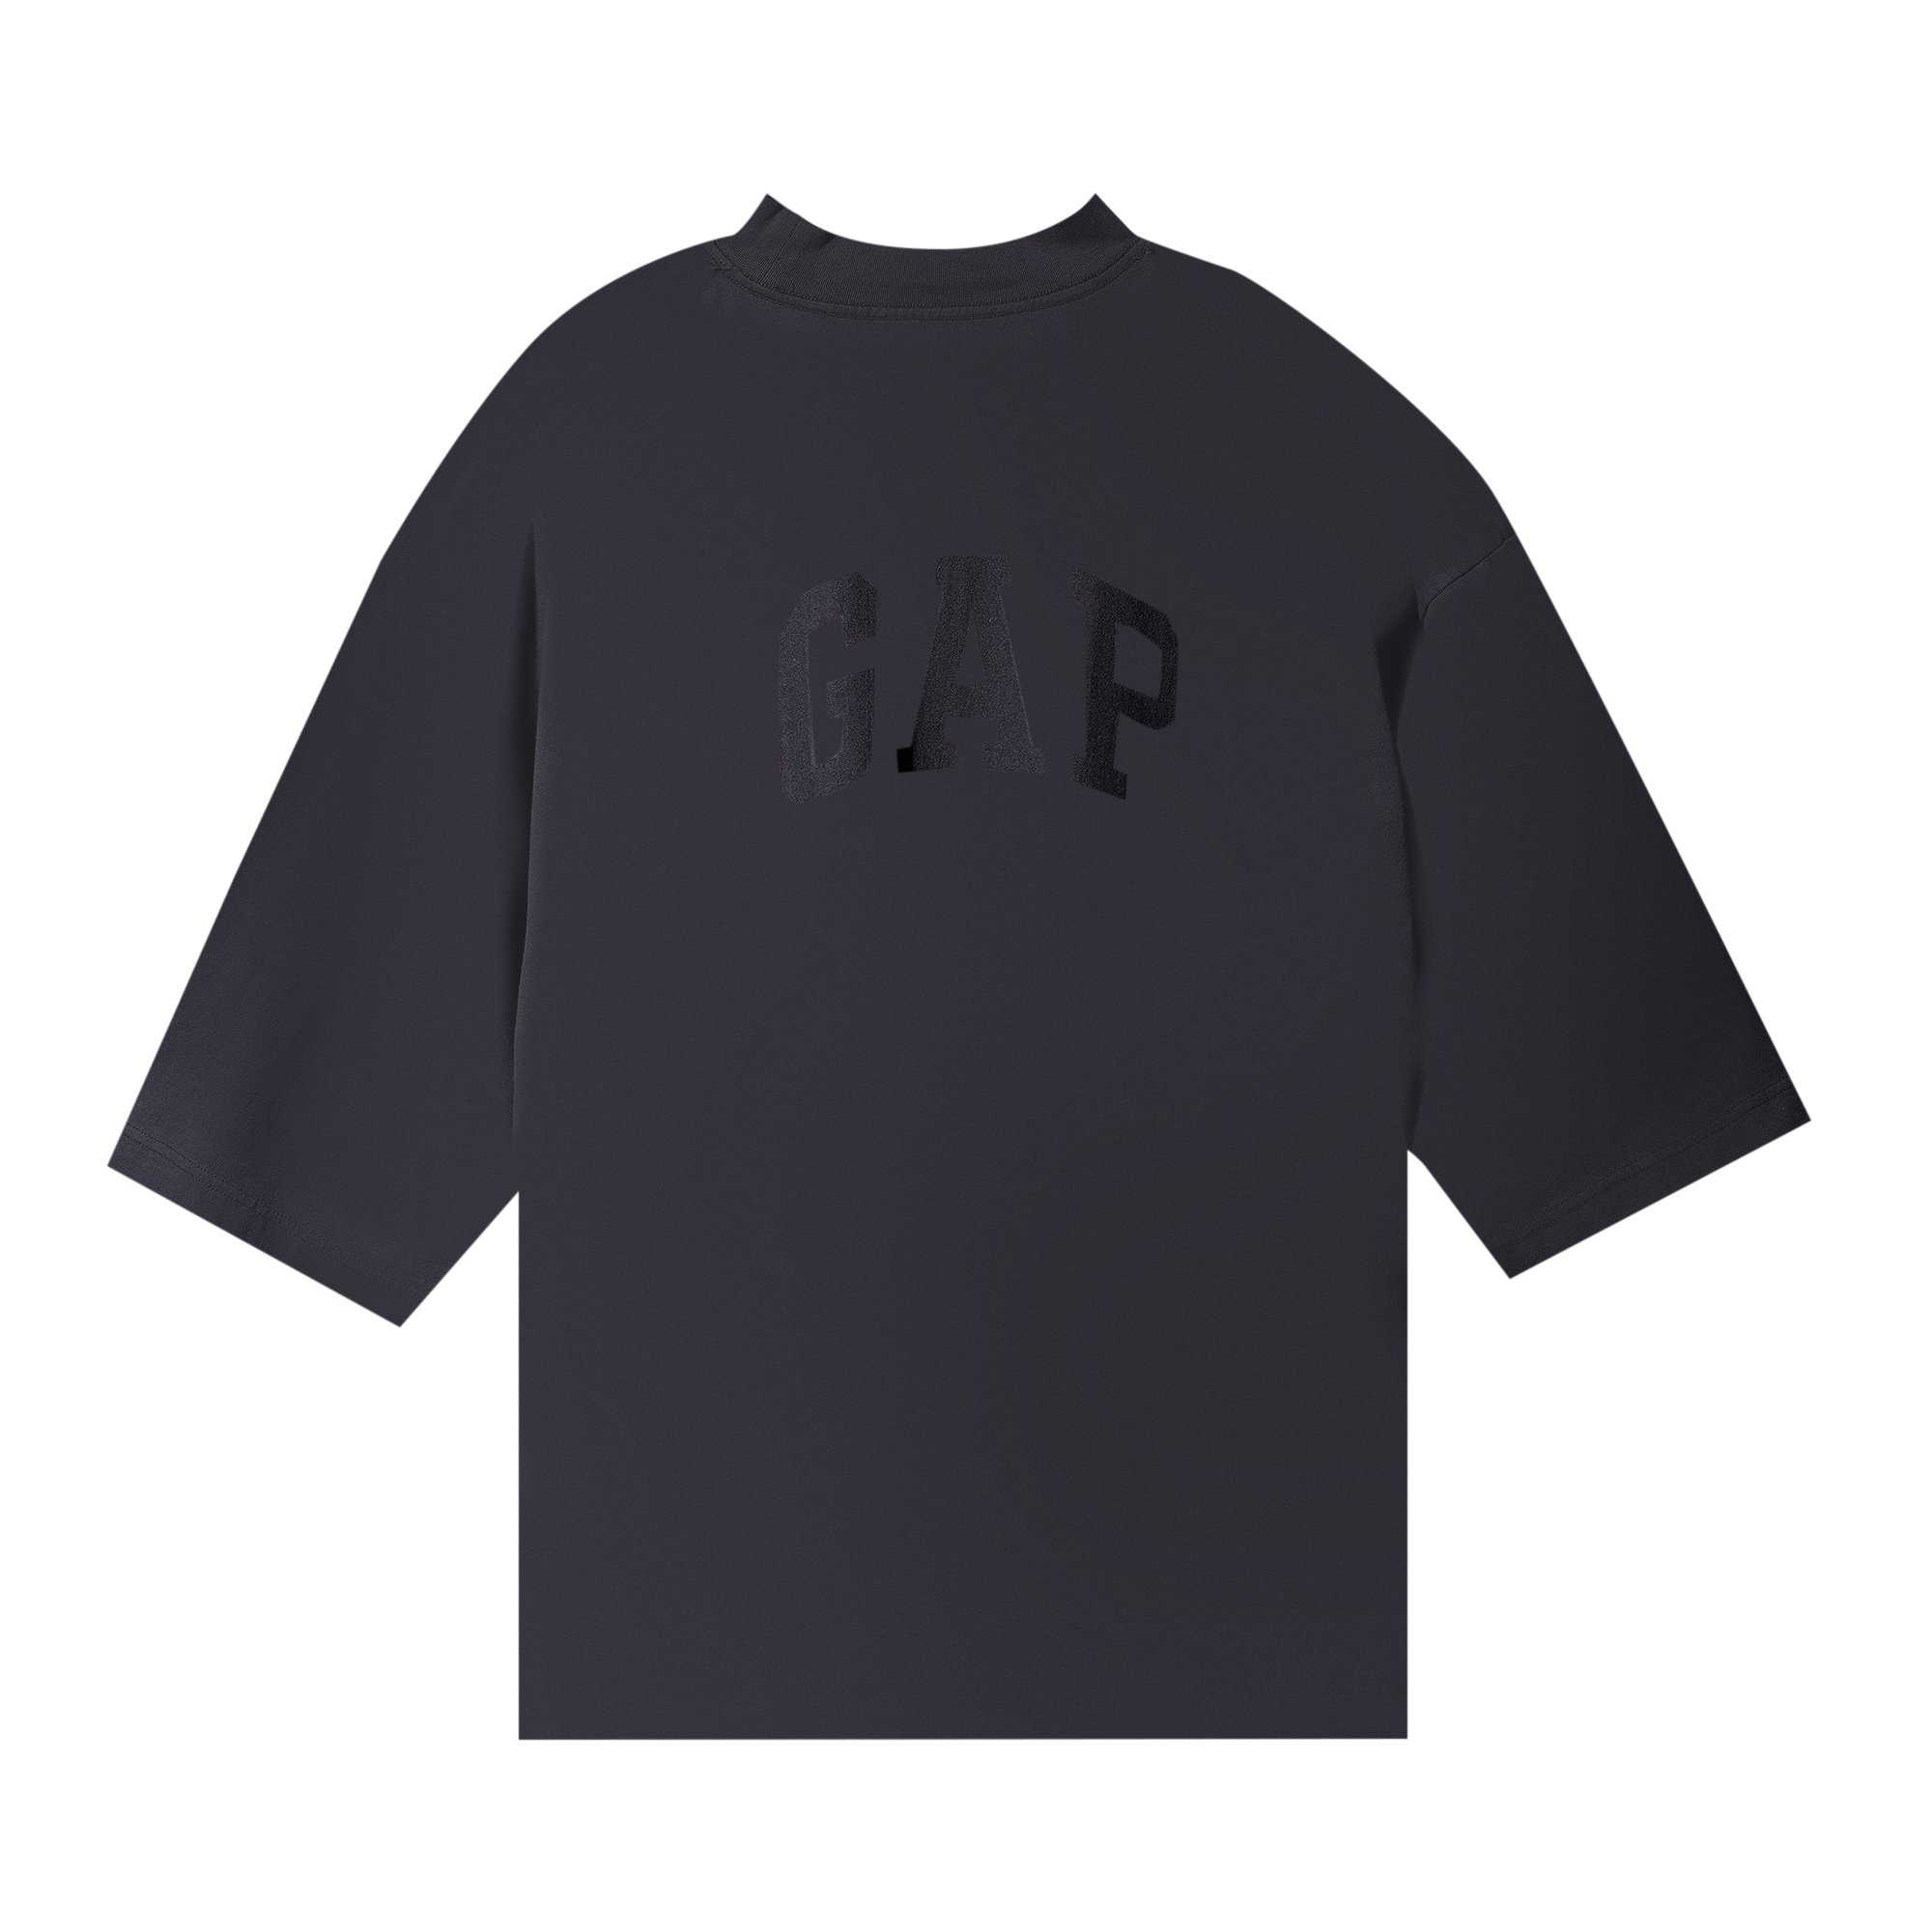 Yeezy Gap Engineered by Balenciaga Dove 3/4 Sleeve Tee 'Black'